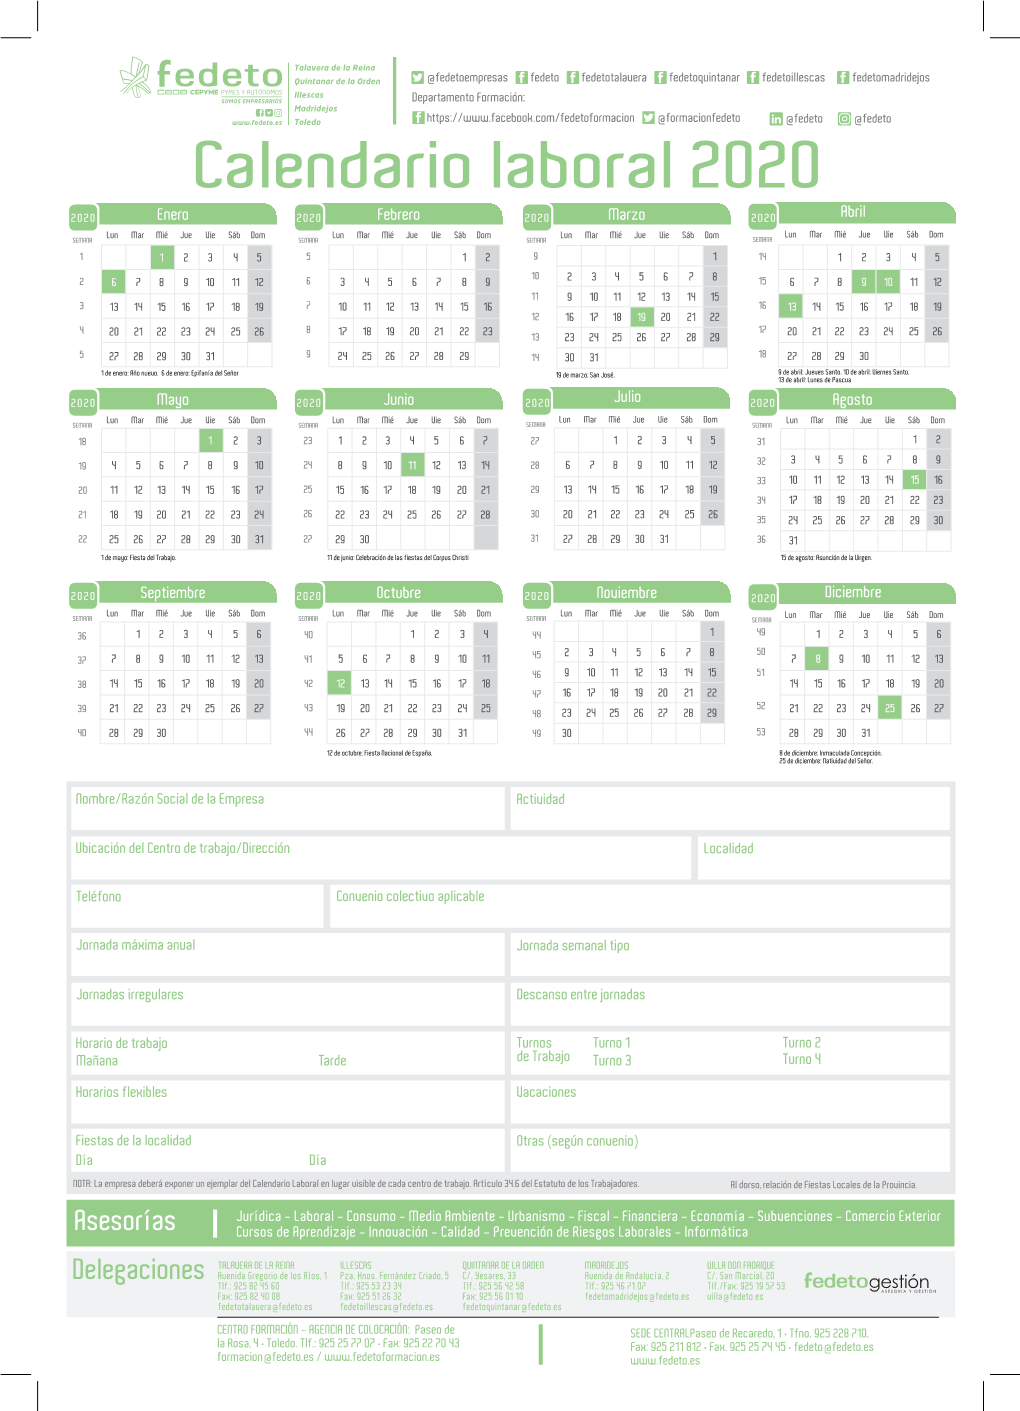 Fedeto Calendario Laboral 2020